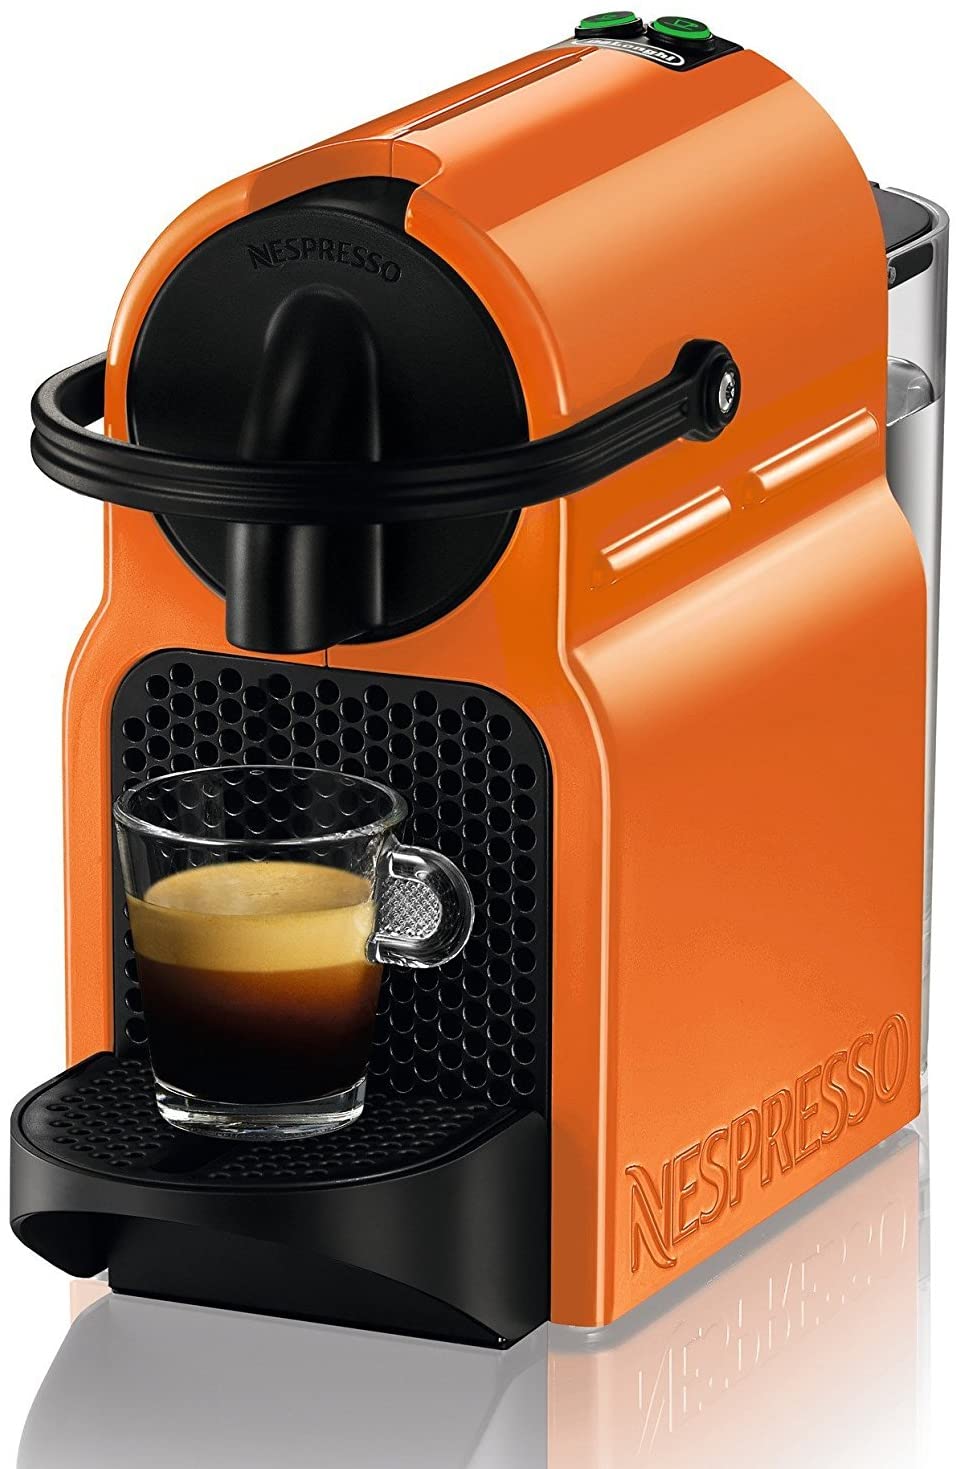 Nespresso Inissia Macchina per caffé espresso, a capsule, 1260 W, 0.7 L, Arancio (Summer Sun)